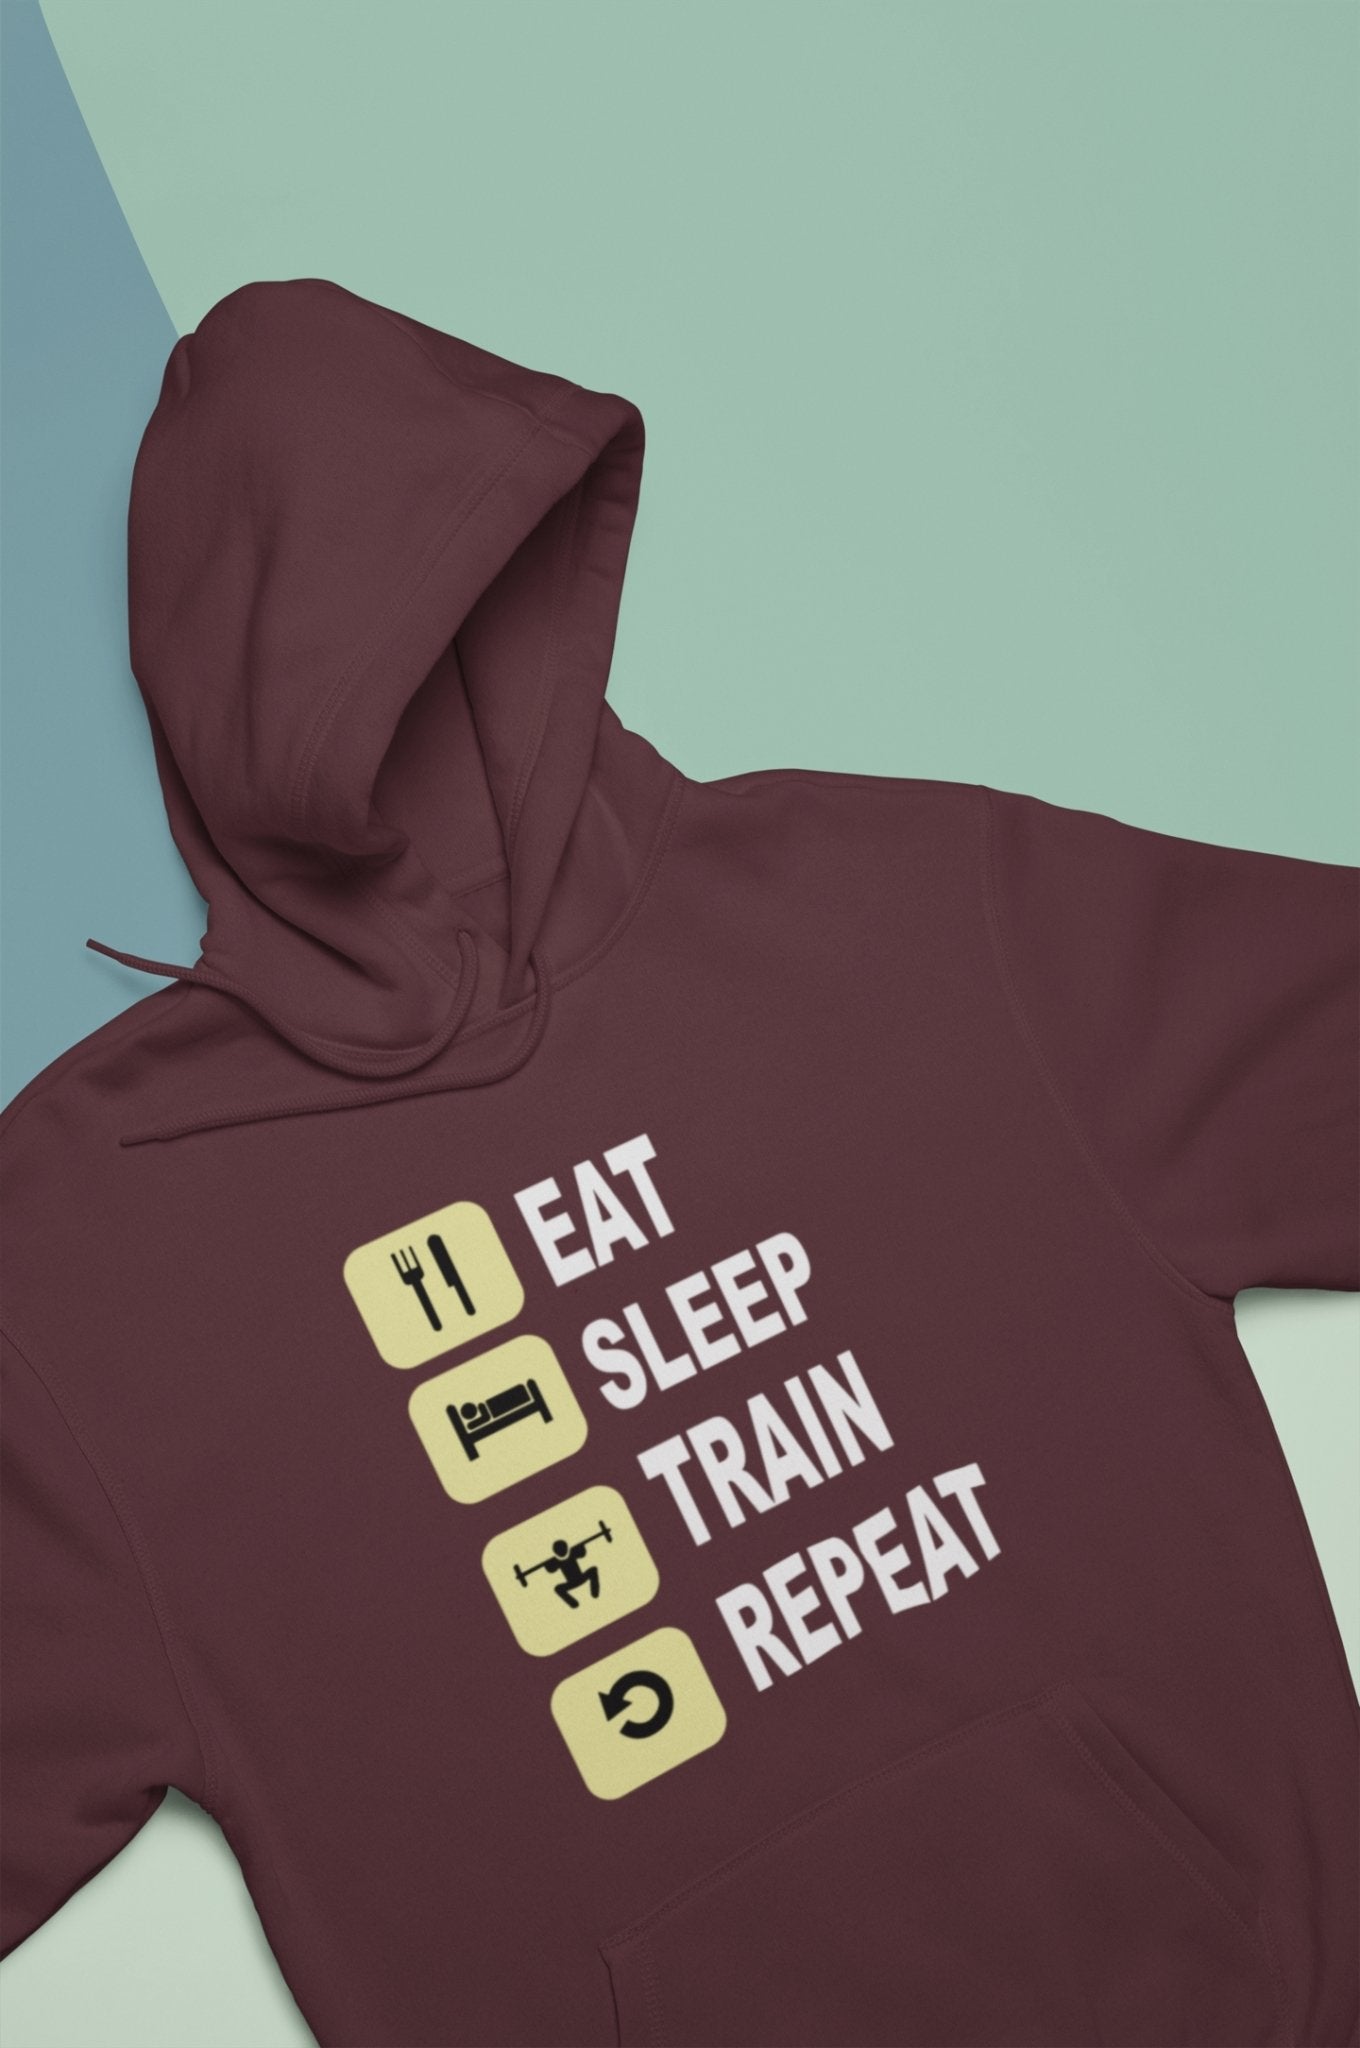 Eat Sleep Train Repeat Gym And Workout Men Hoodies-FunkyTeesClub - Funky Tees Club